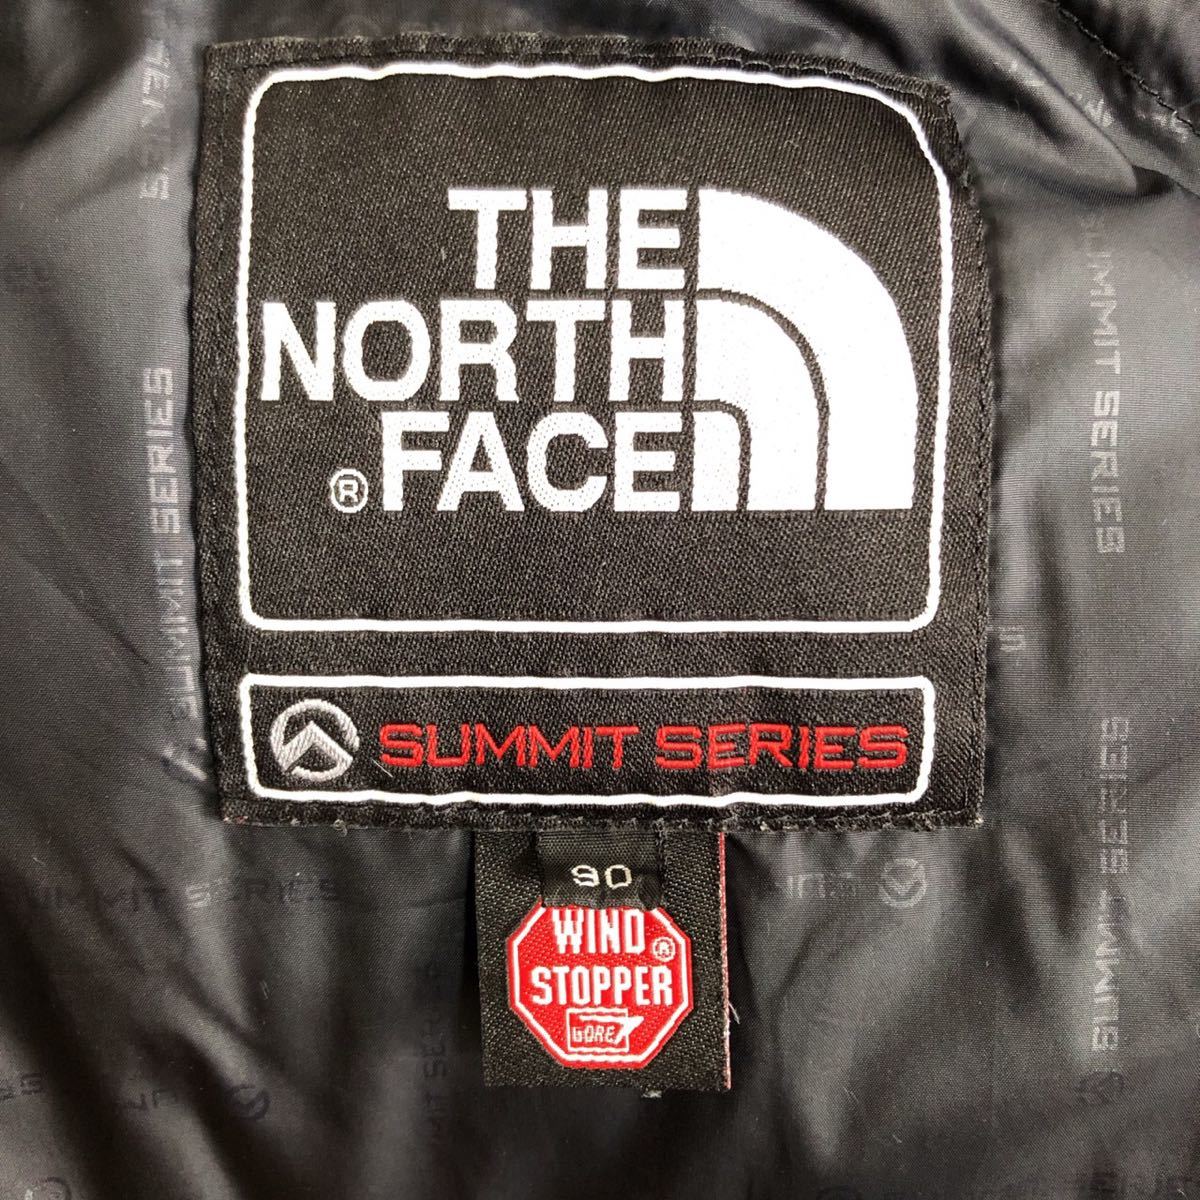 THE NORTH FACE バルトロ ダウンジャケット ウィンドストッパー サミットシリーズ メンズ S